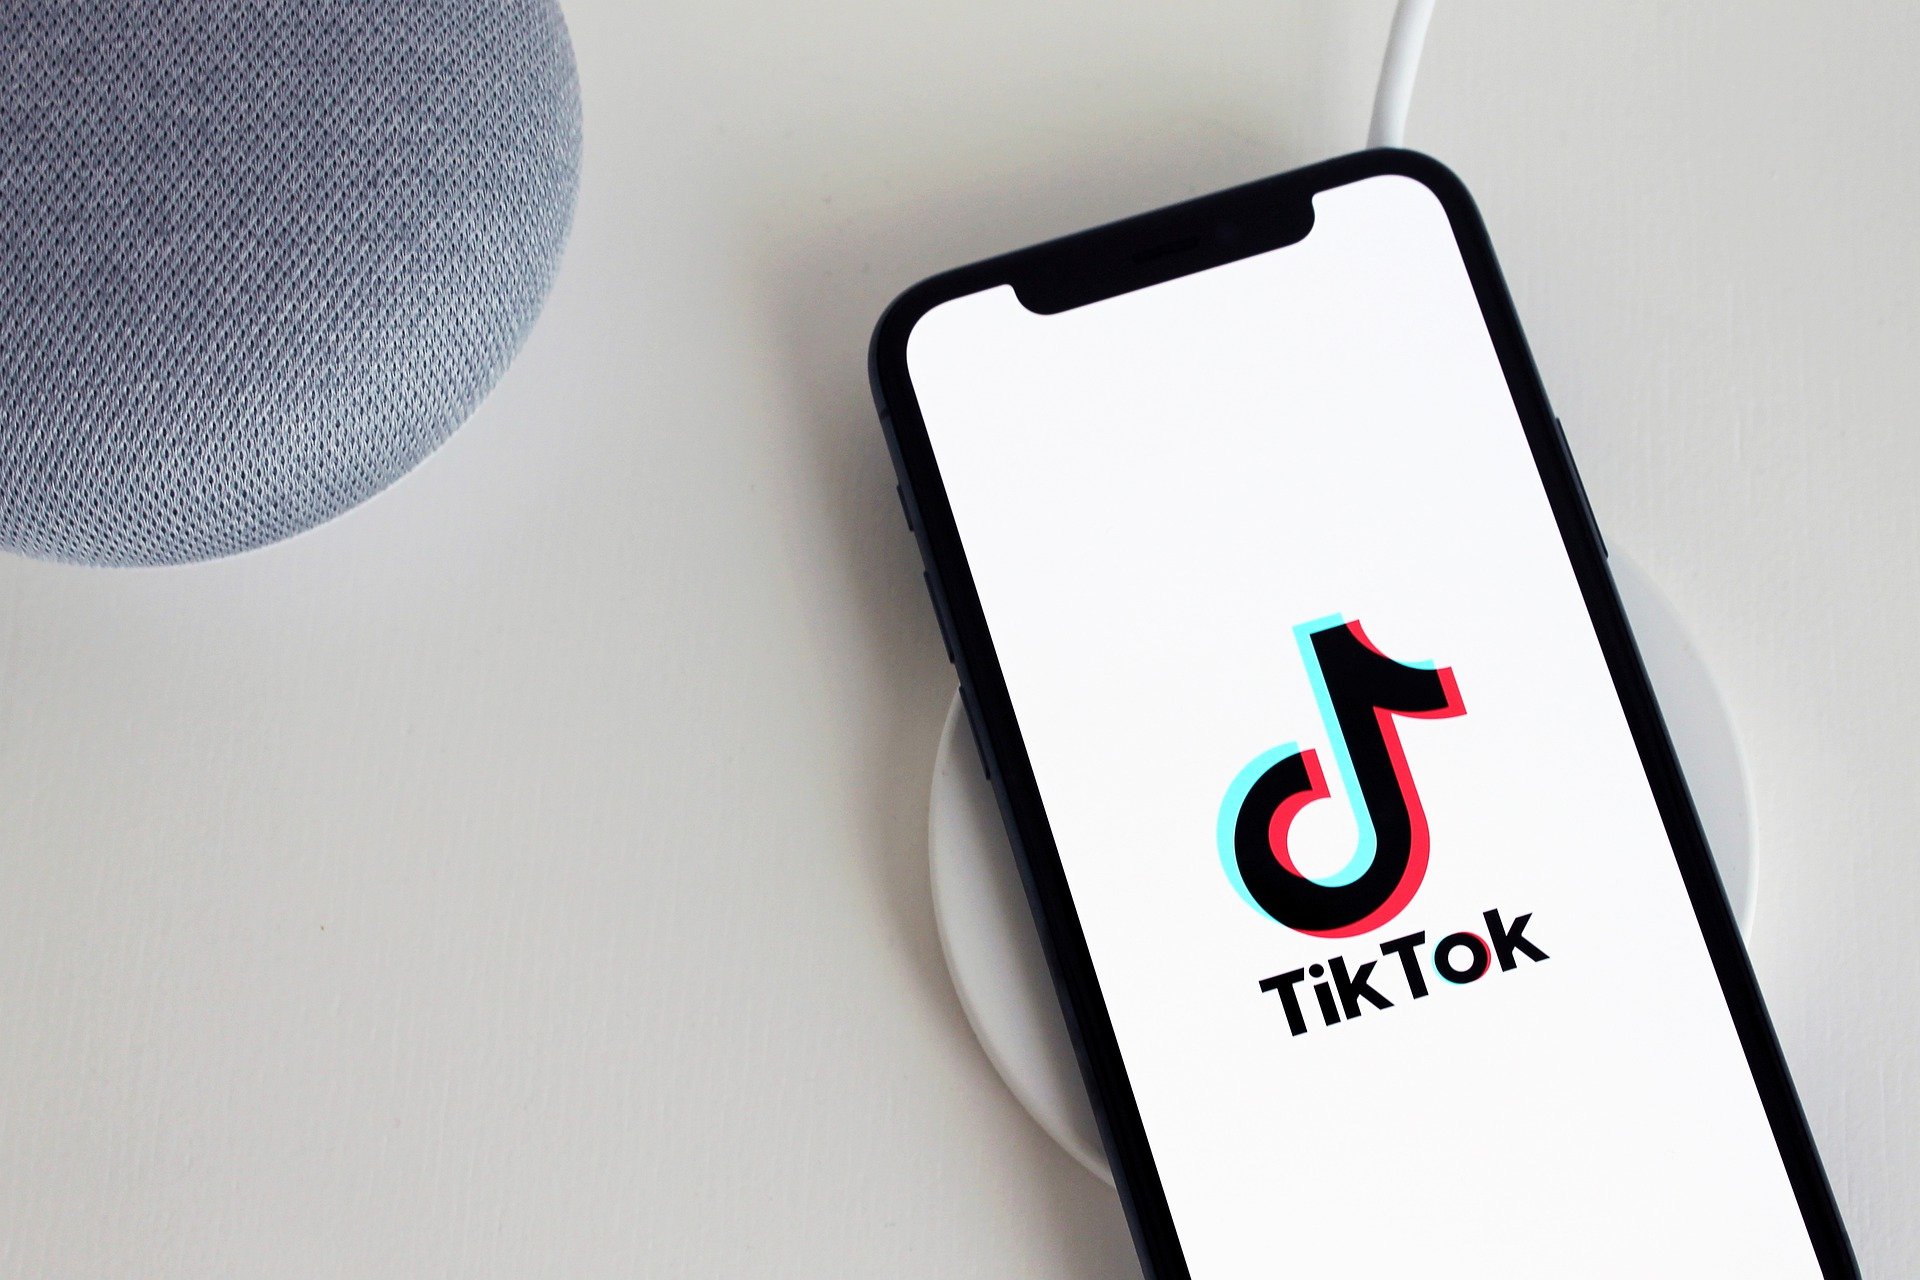 Plusieurs raisons d'utiliser TikTok pour votre entreprise